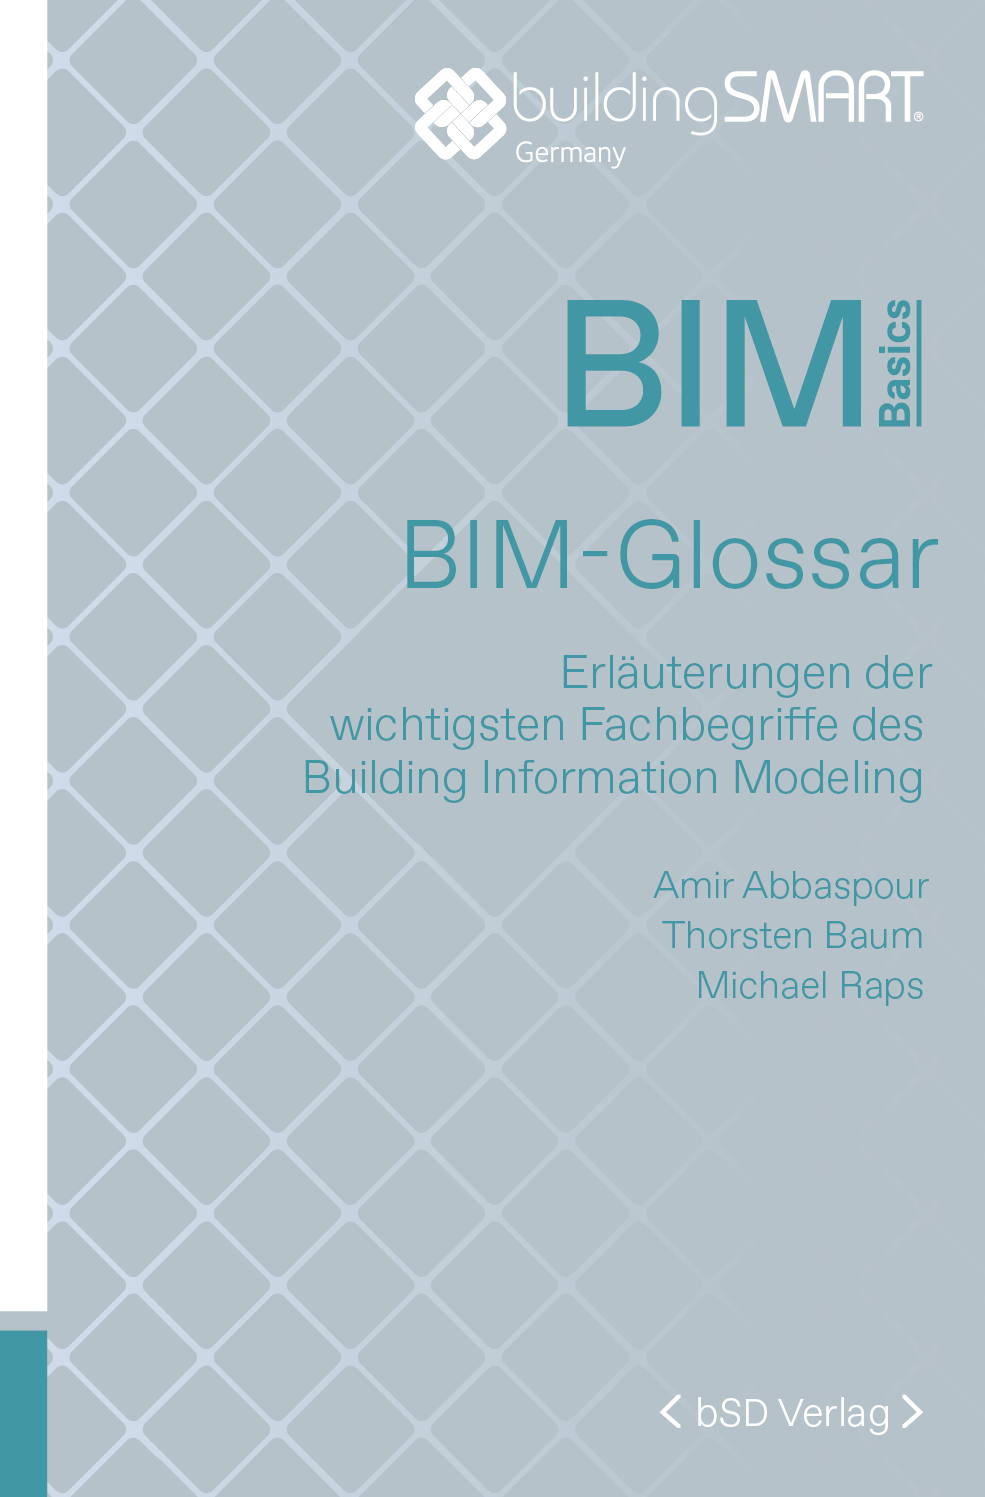 bSD Verlag/BIM Basics: BIM-Glossar